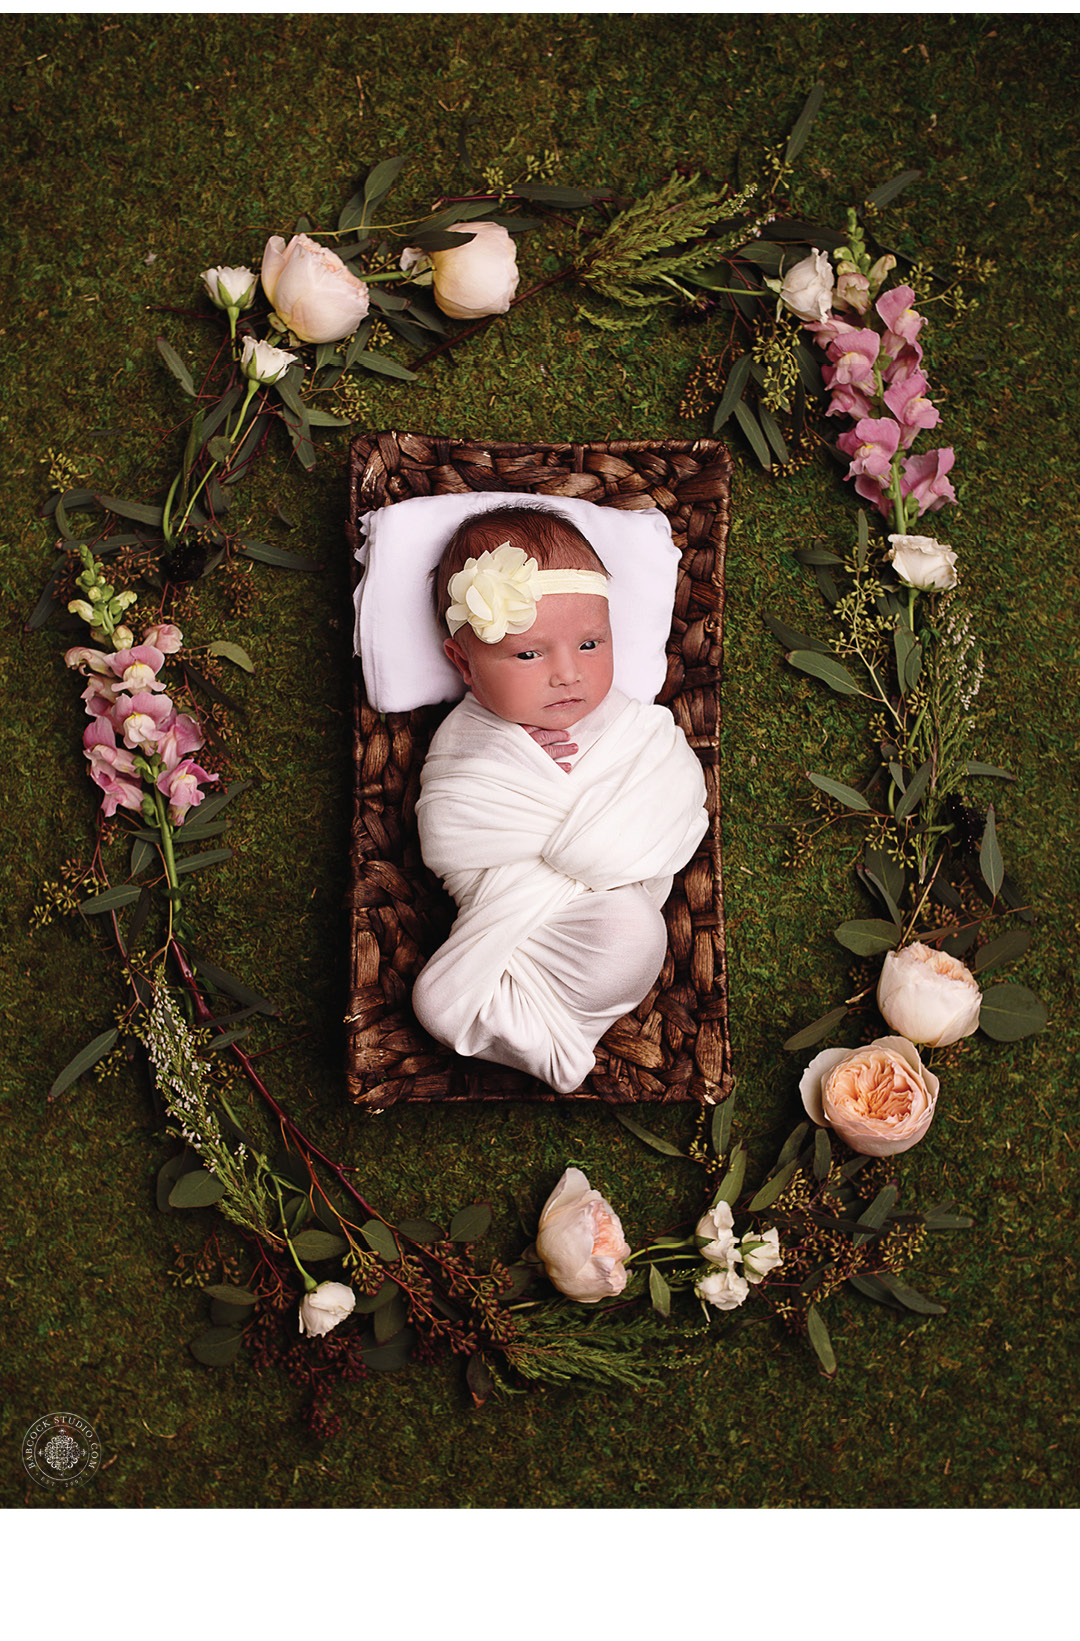 kramer-dayton-children-newborn-family-photographer-6.jpg